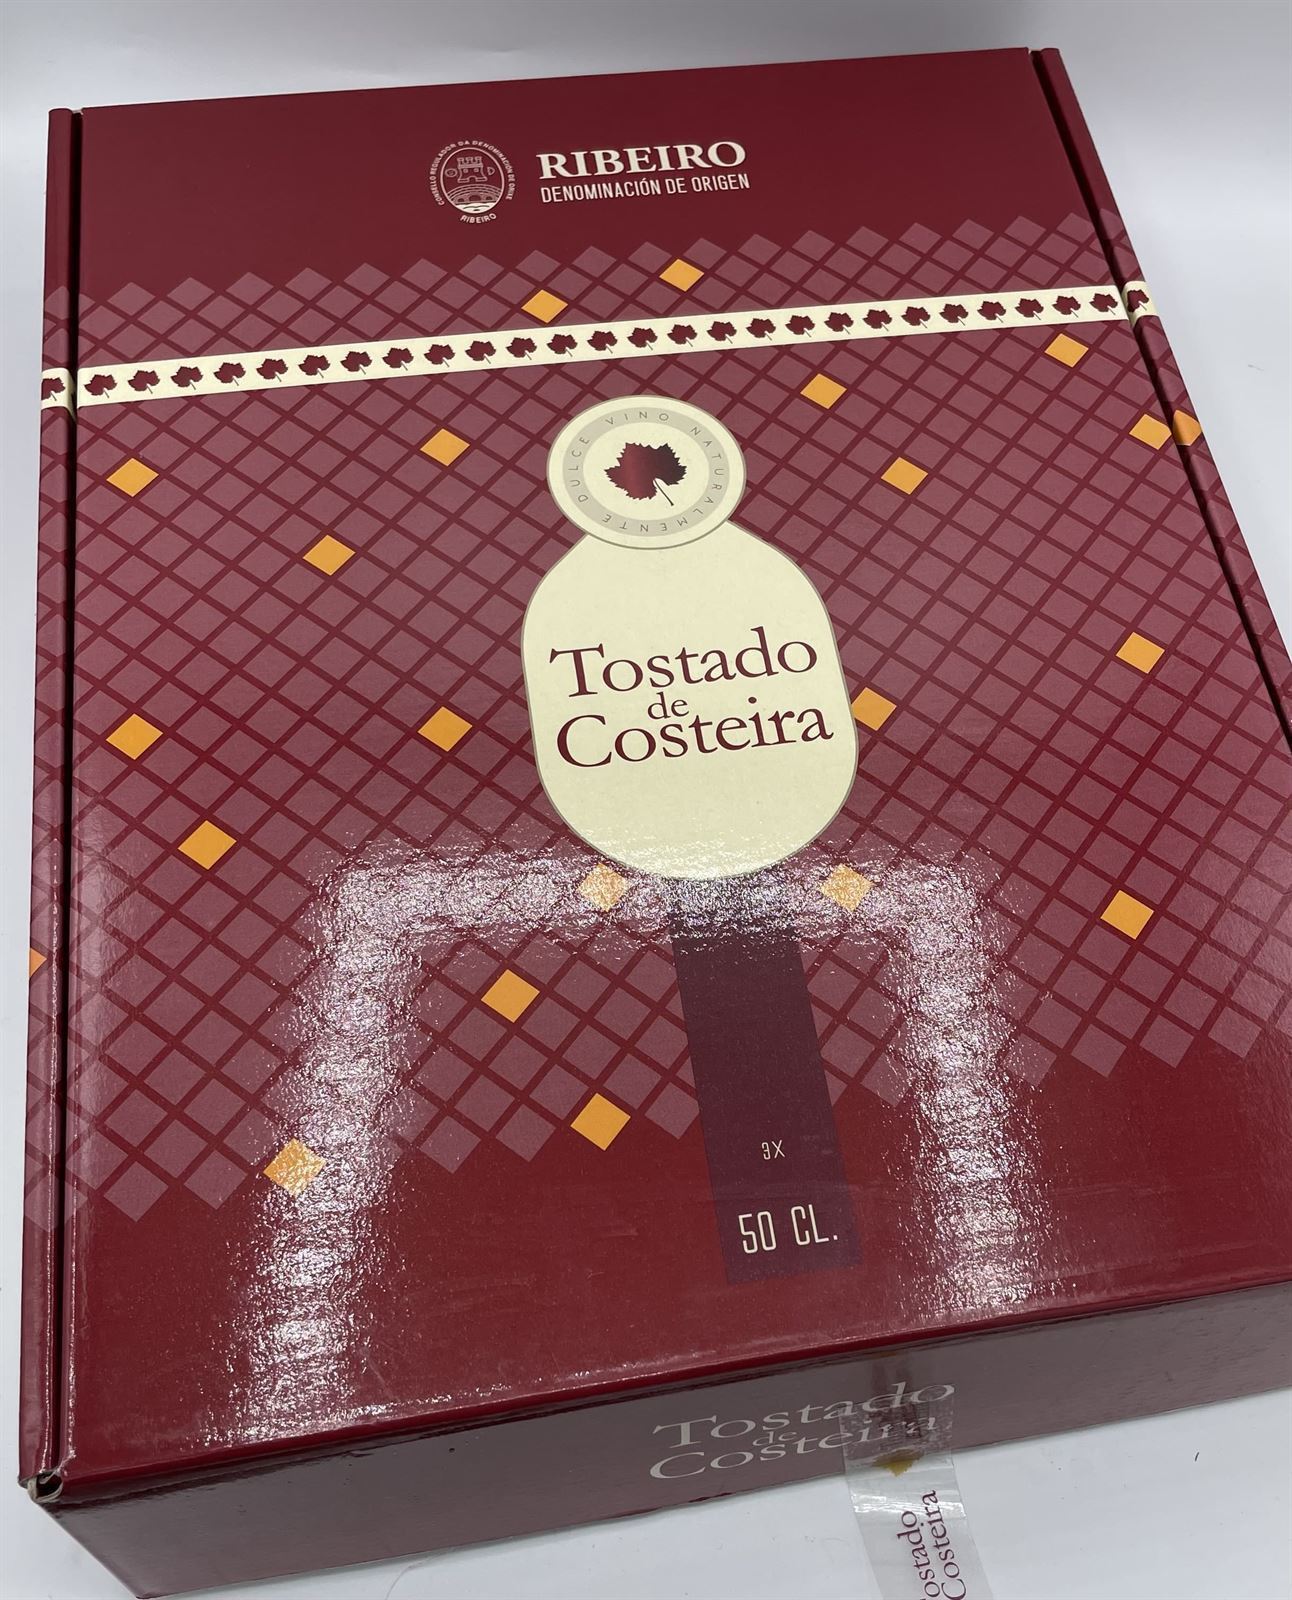 VINO DULCE TOSTADO DE COSTEIRA TREIXADURA 500ml 2015 (CAJA CON 3 ESTUCHES INDIVIDUALES) - Imagen 2